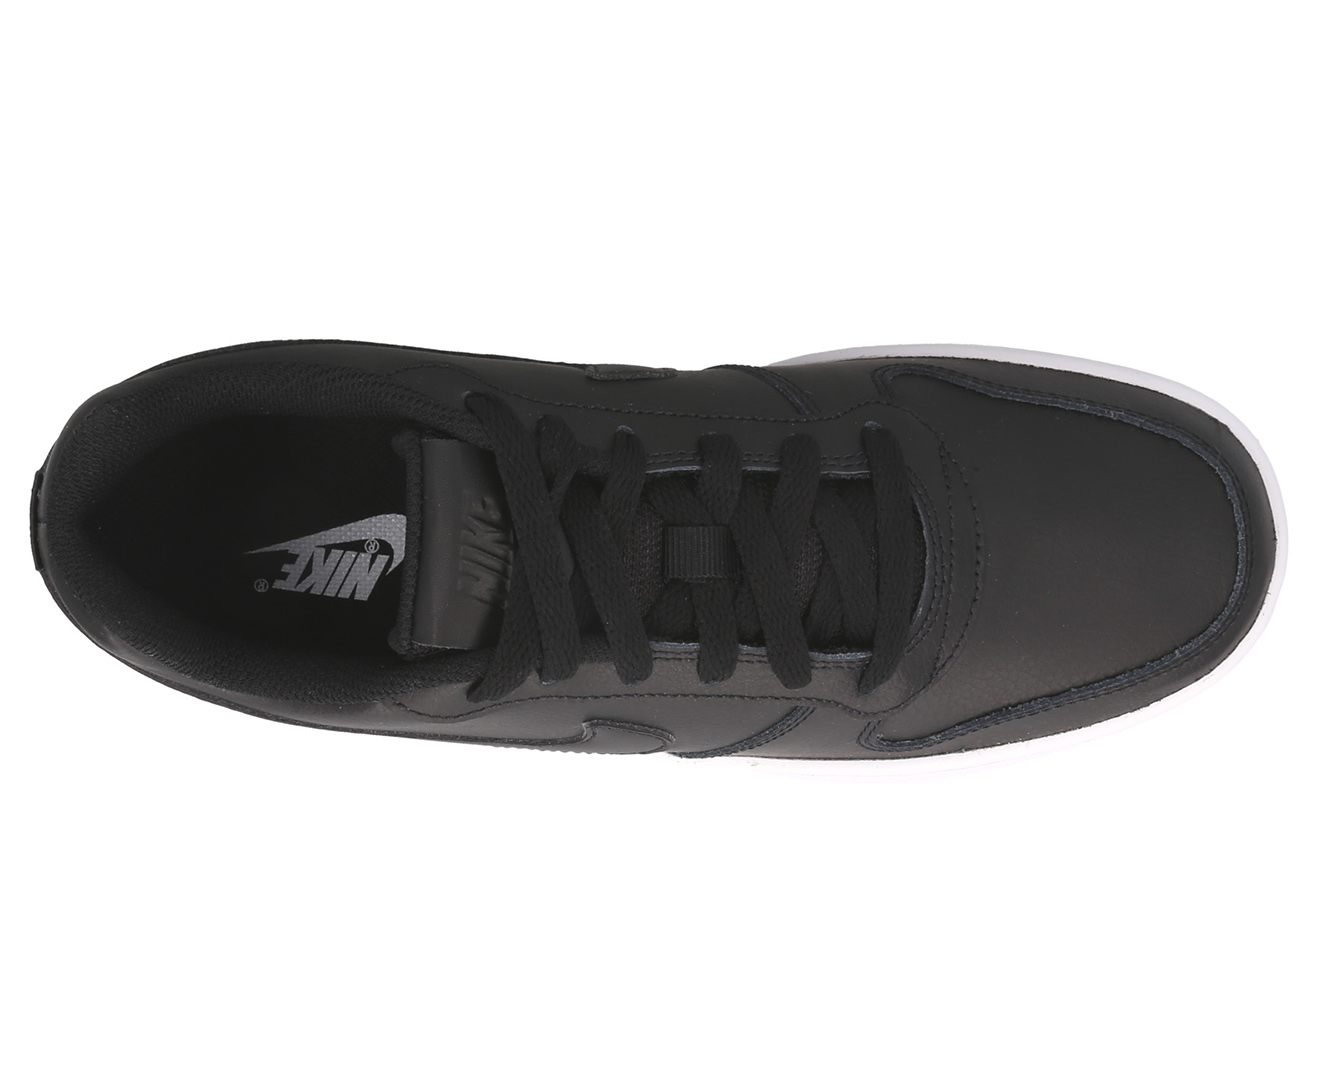 Nike Women's Ebernon Low Sneakers - Black/Black-White | Catch.co.nz